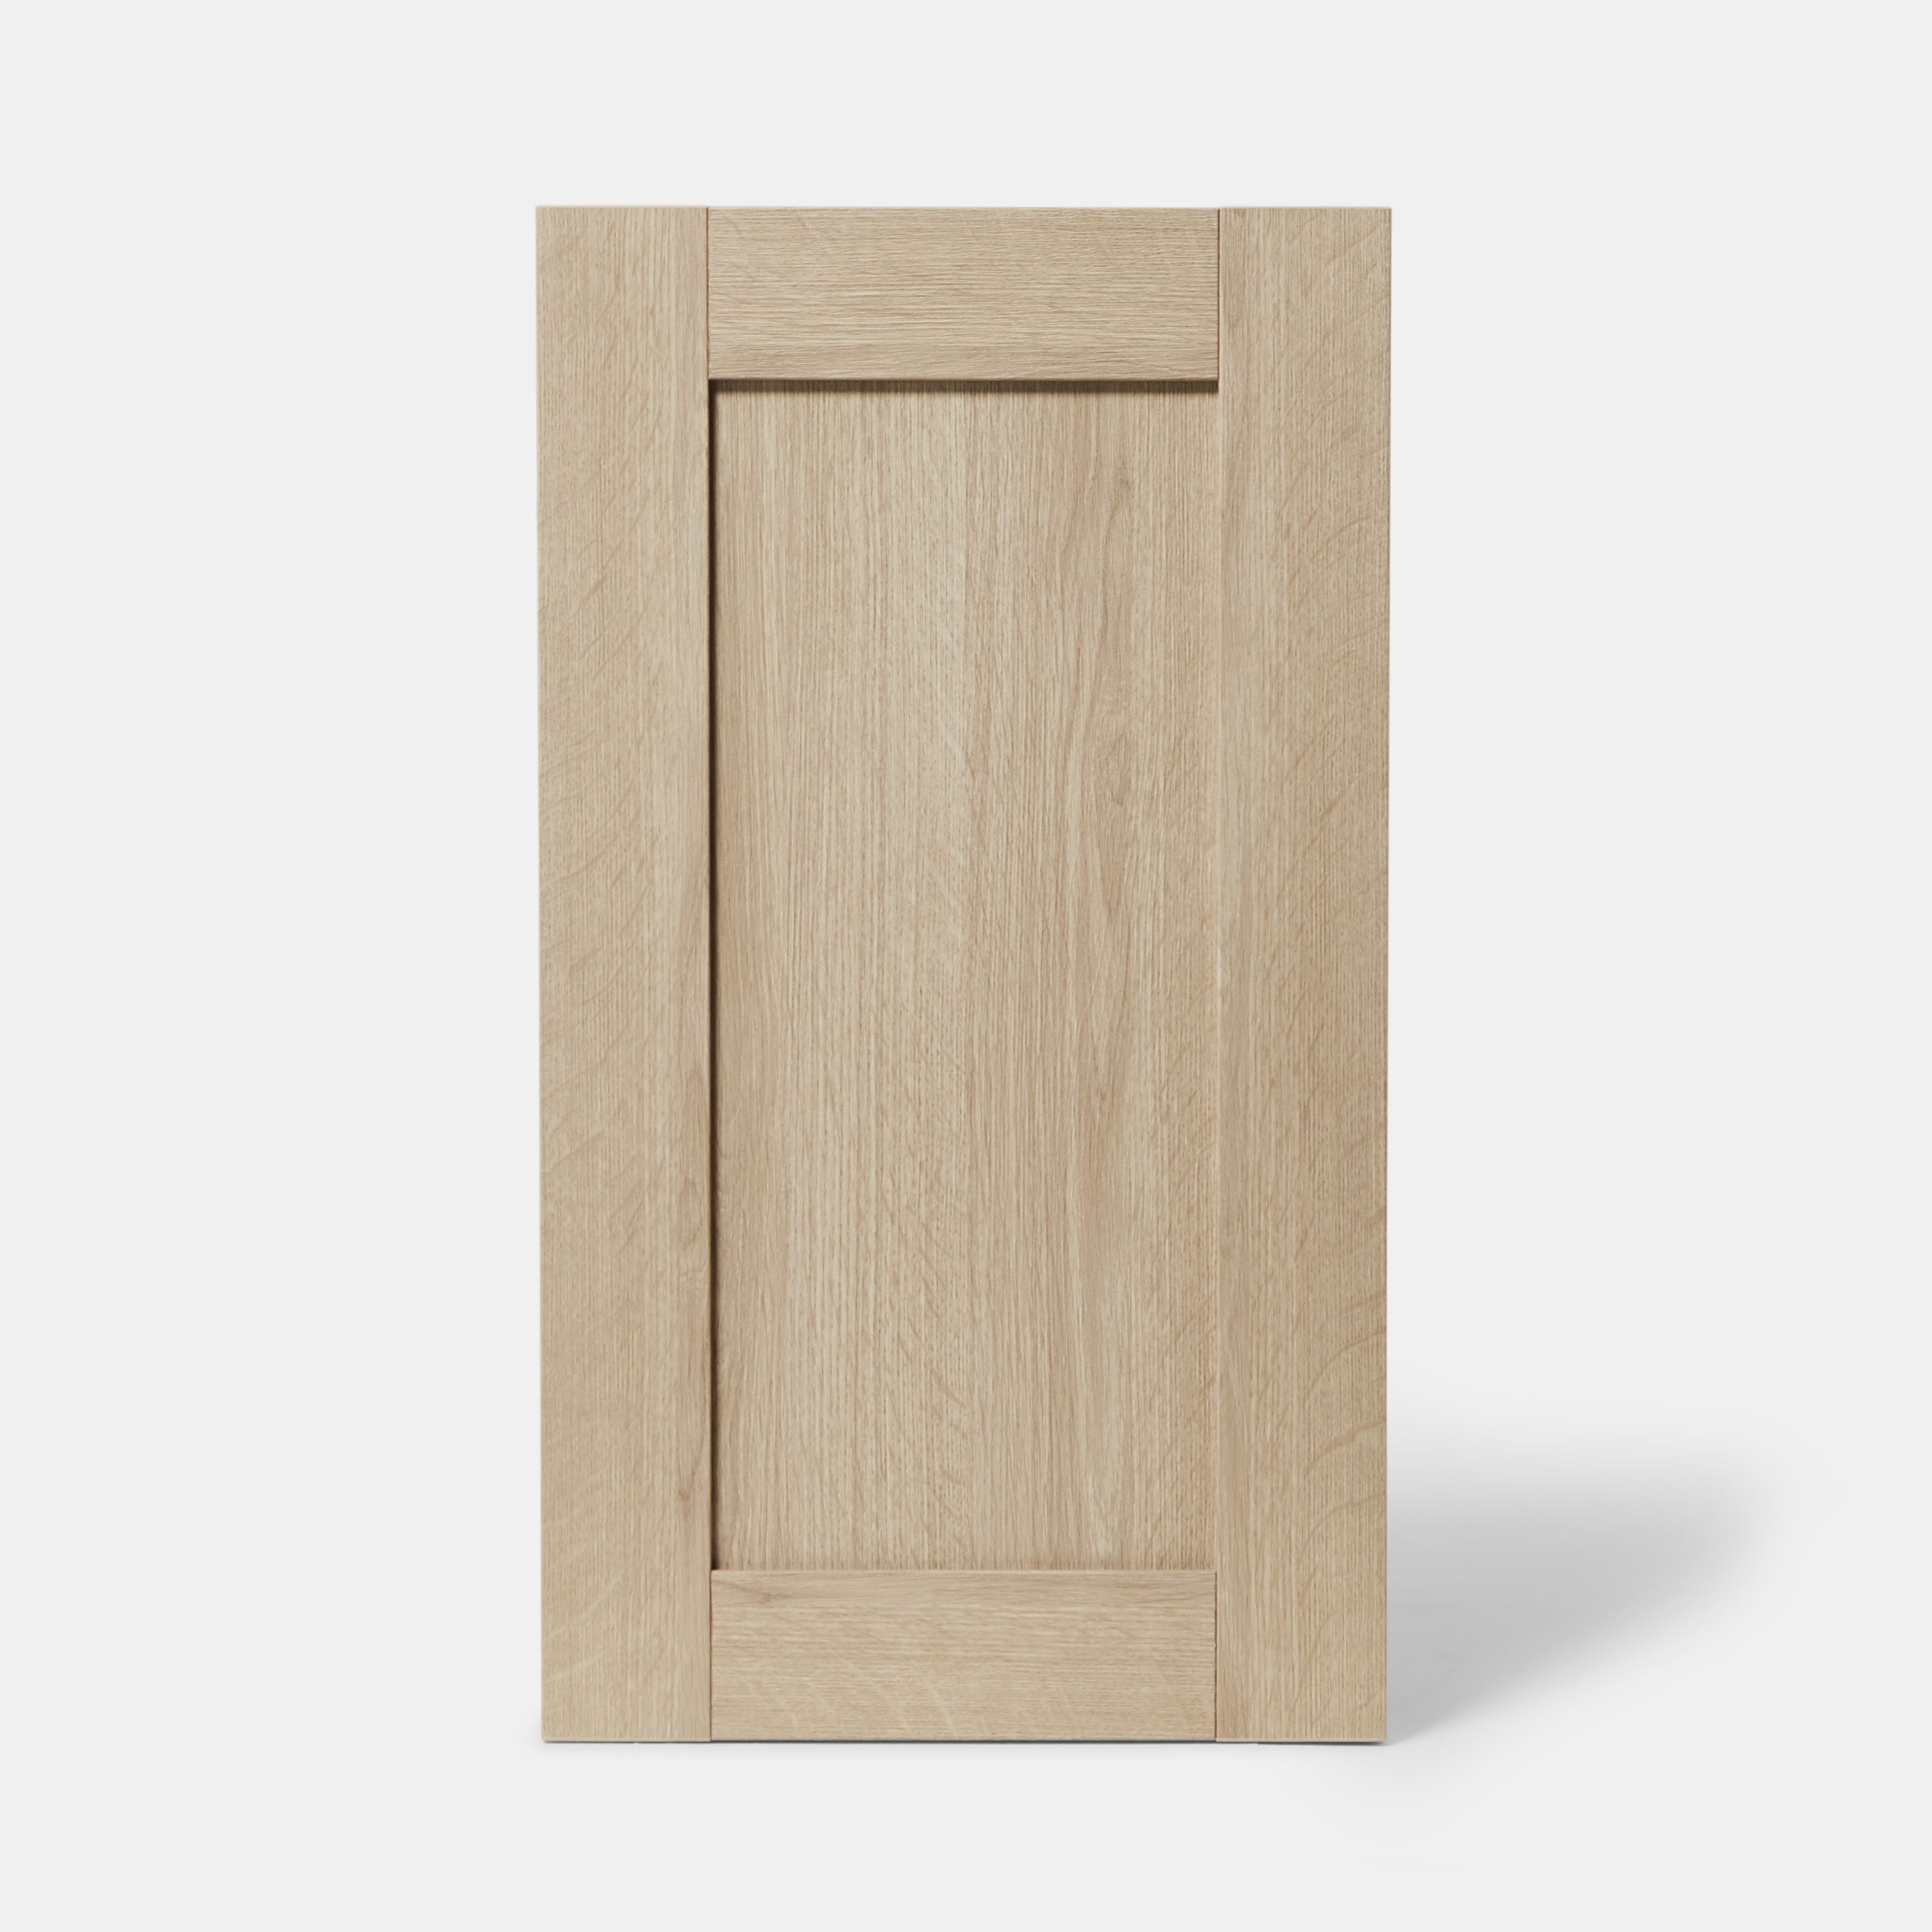 GoodHome Alpinia Oak effect shaker Highline Cabinet door (W)450mm (H)715mm (T)18mm